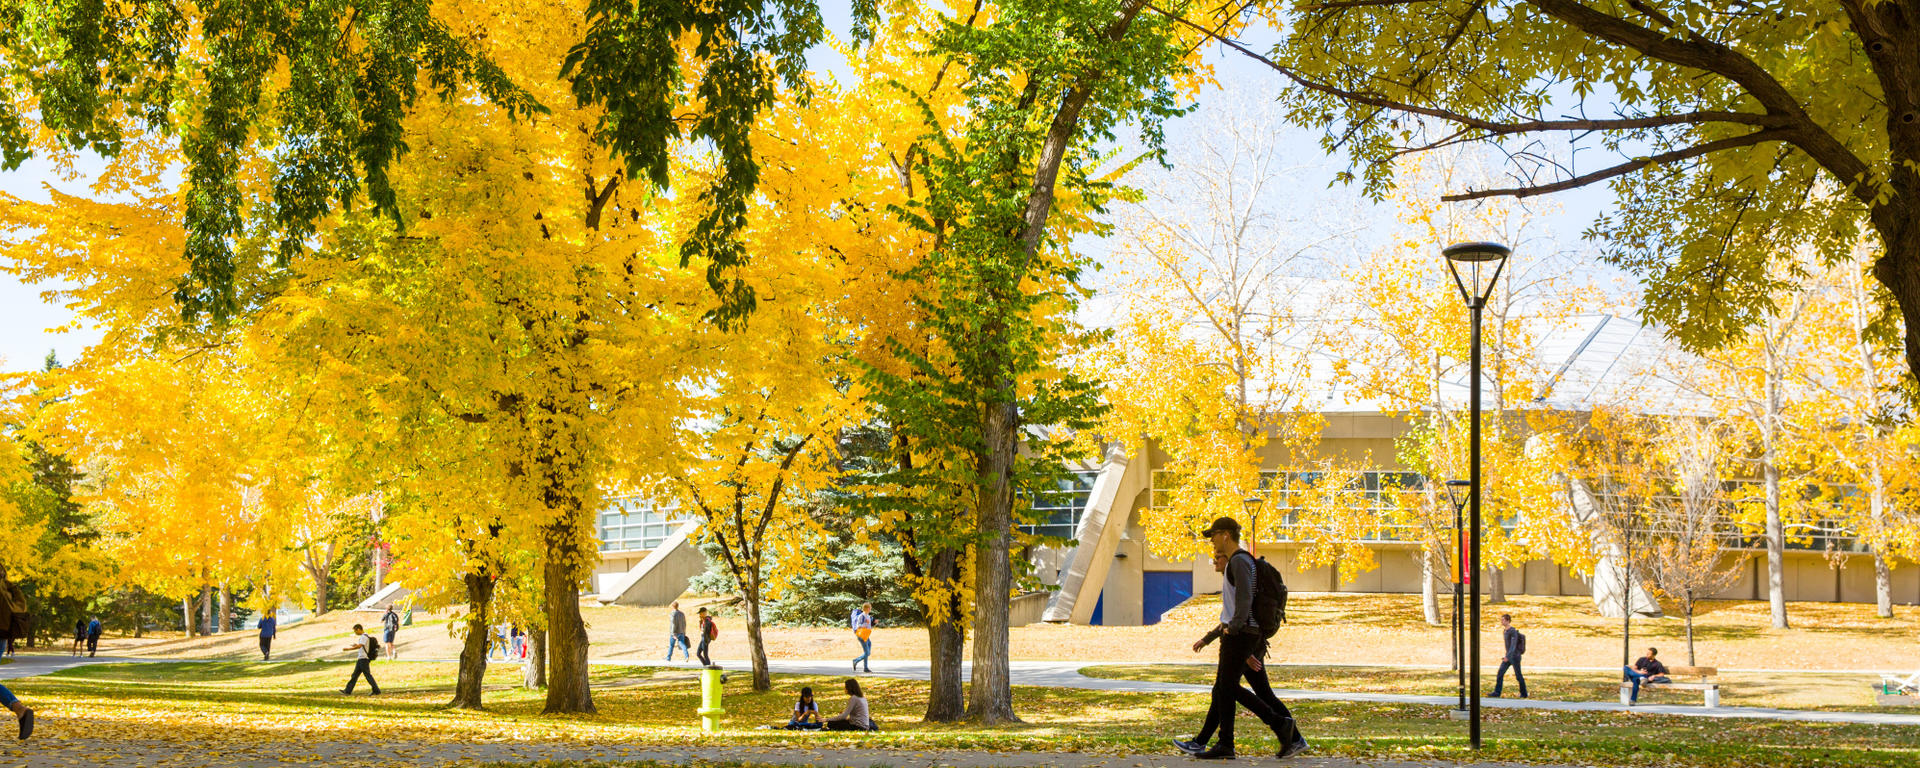 Fall at the U of C Main Campus